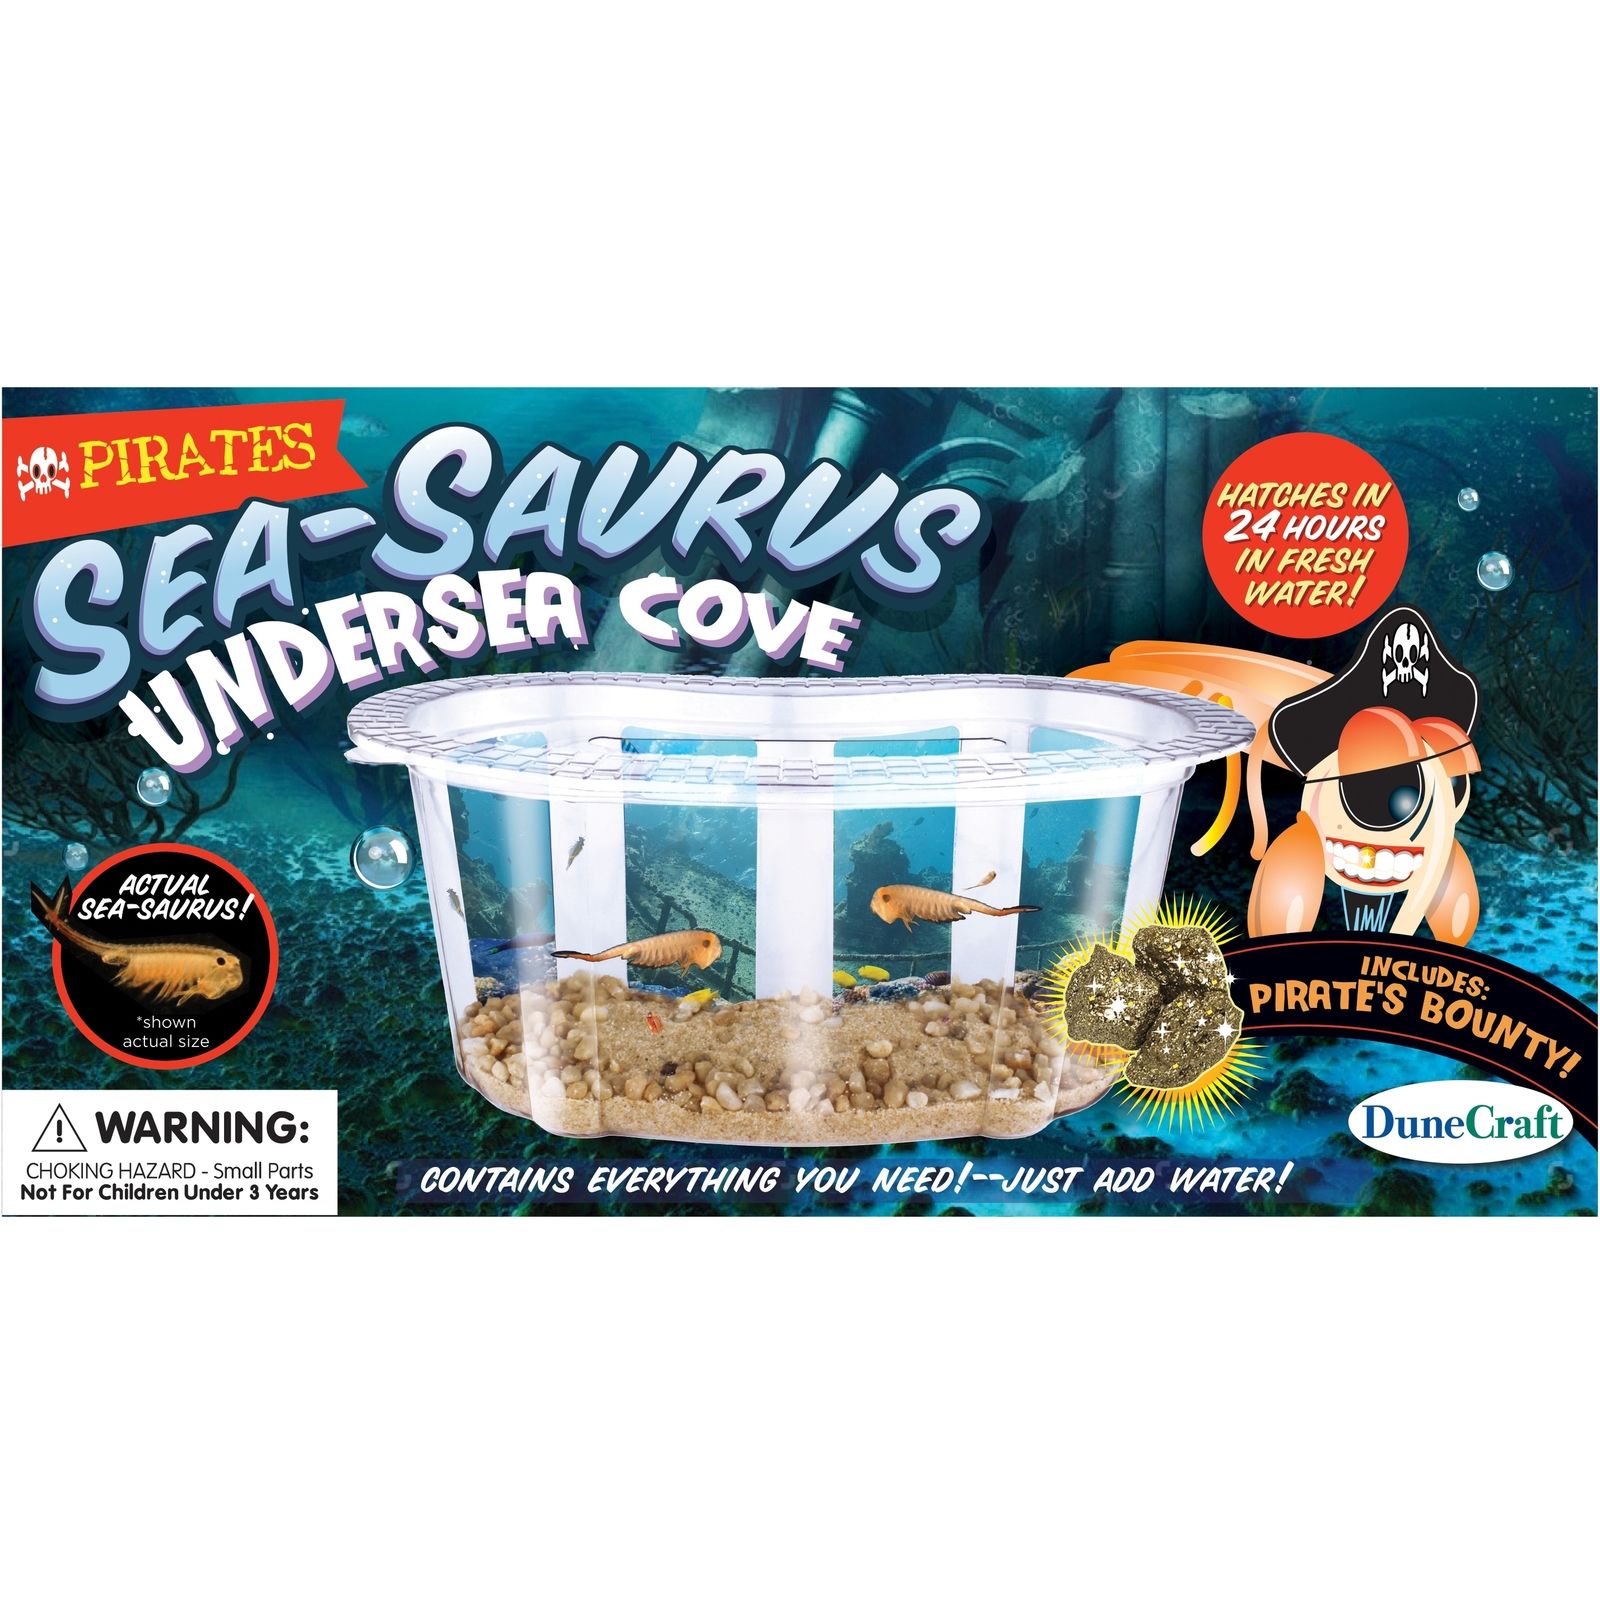 Pirate Sea-Saurus Undersea Cove